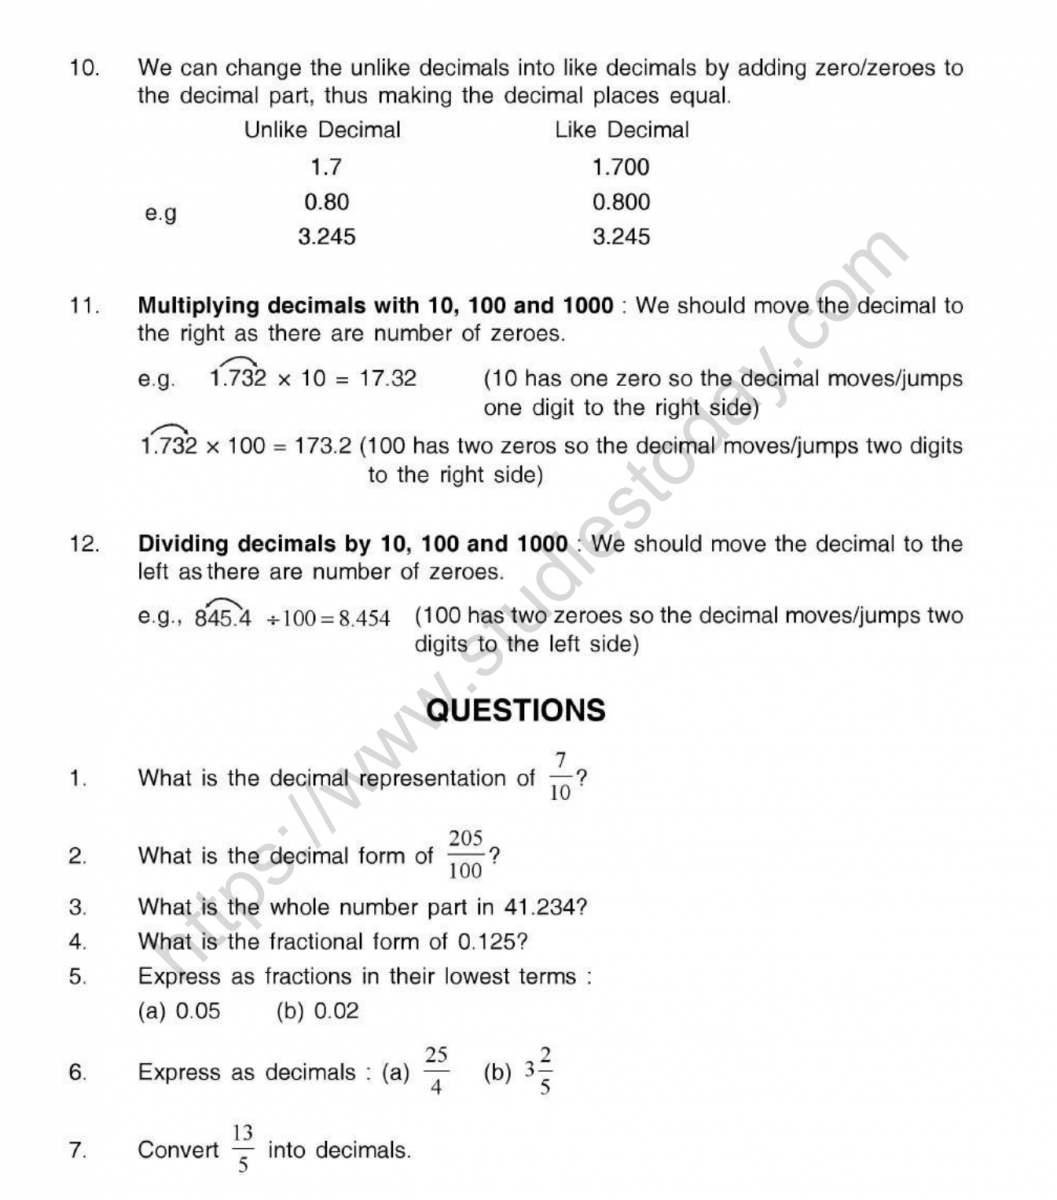 cbse-class-5-mental-maths-decimals-worksheet